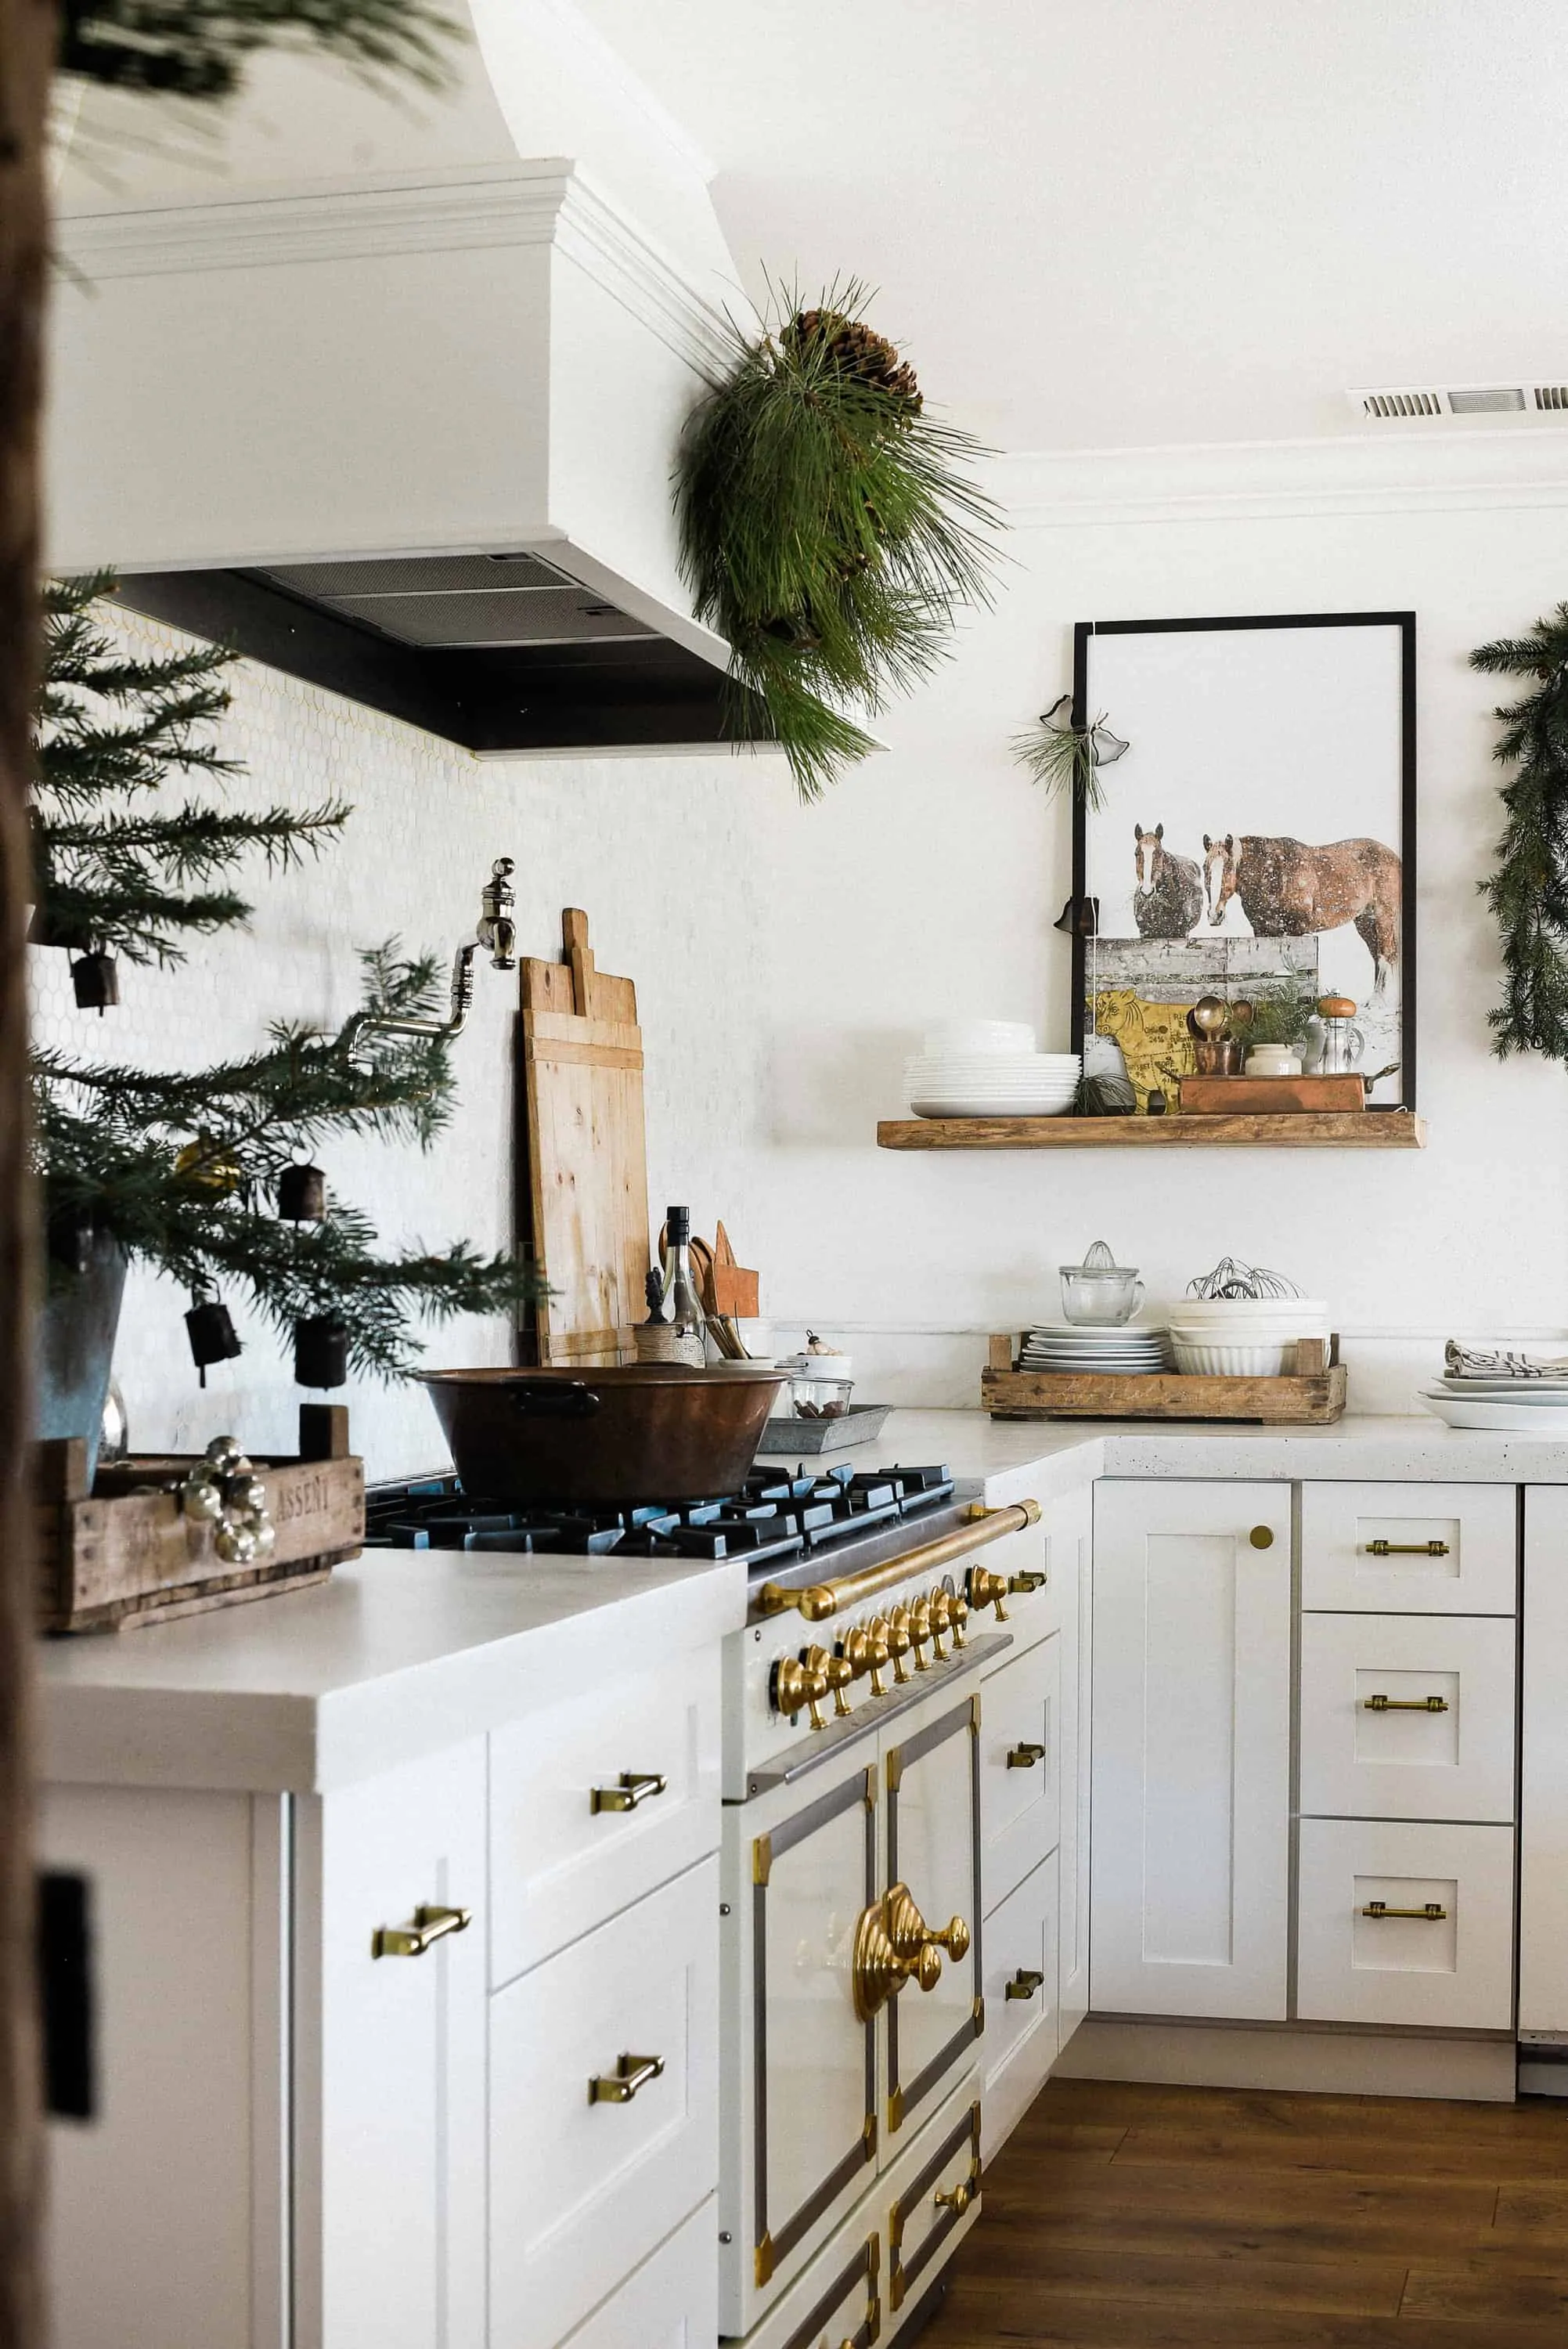 Farmhouse Christmas Kitchen Decor Ideas